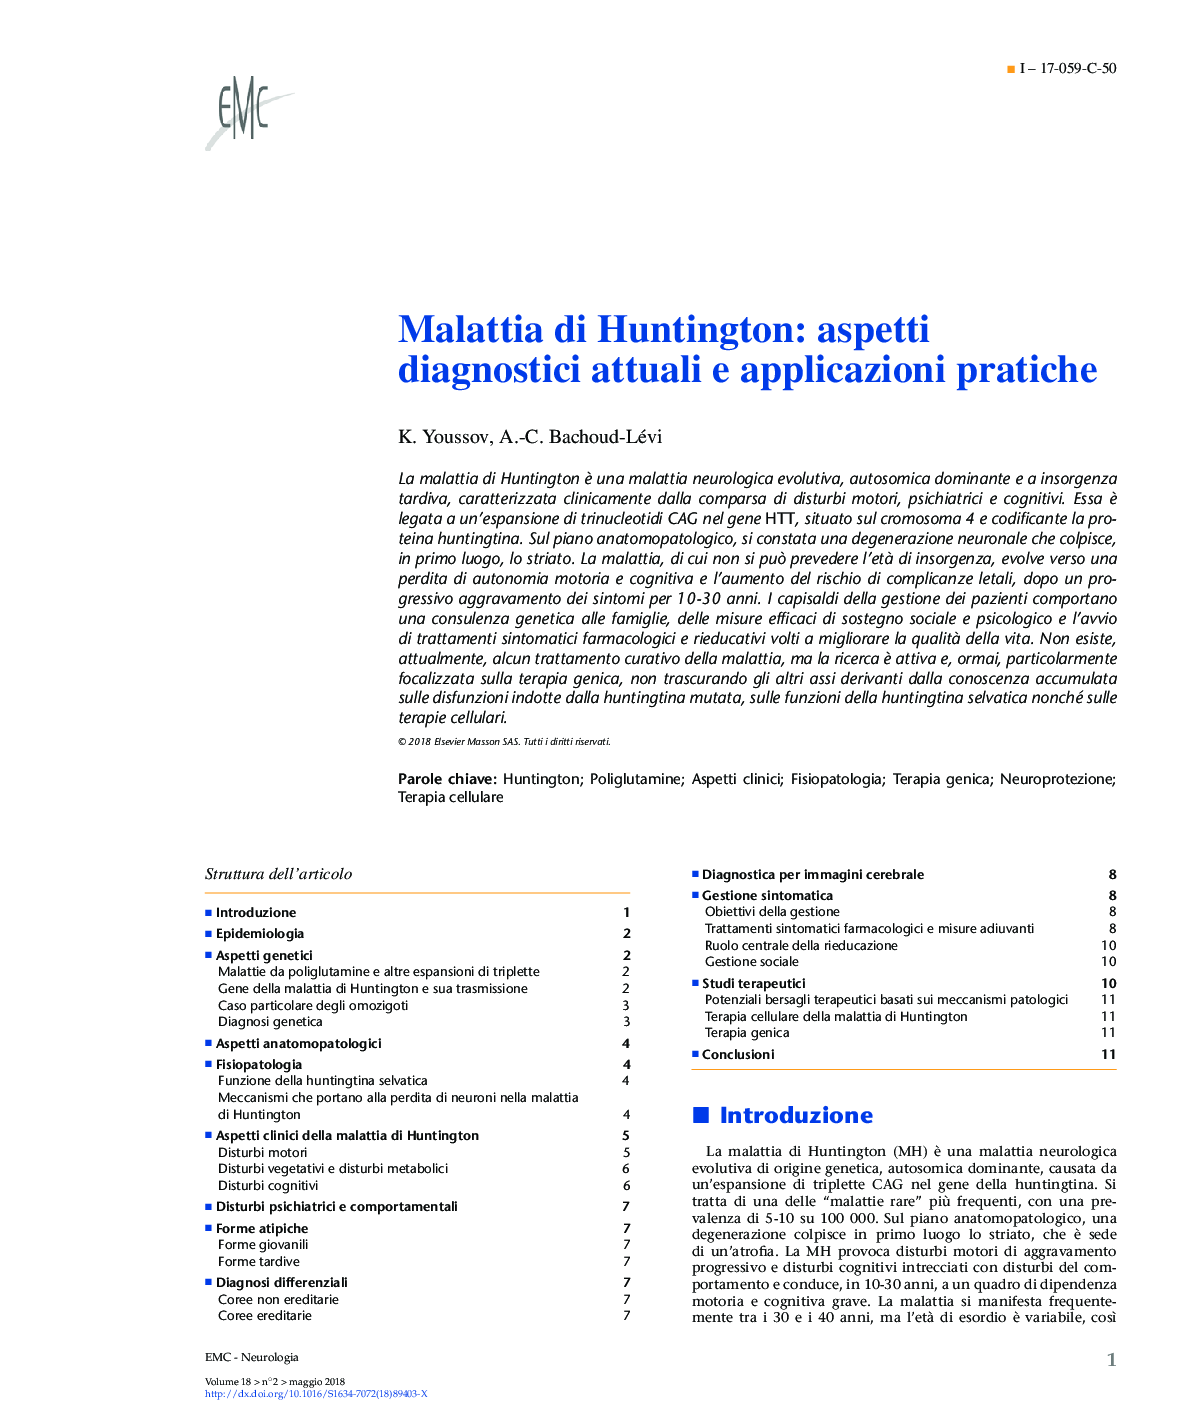 Malattia di Huntington: aspetti diagnostici attuali e applicazioni pratiche